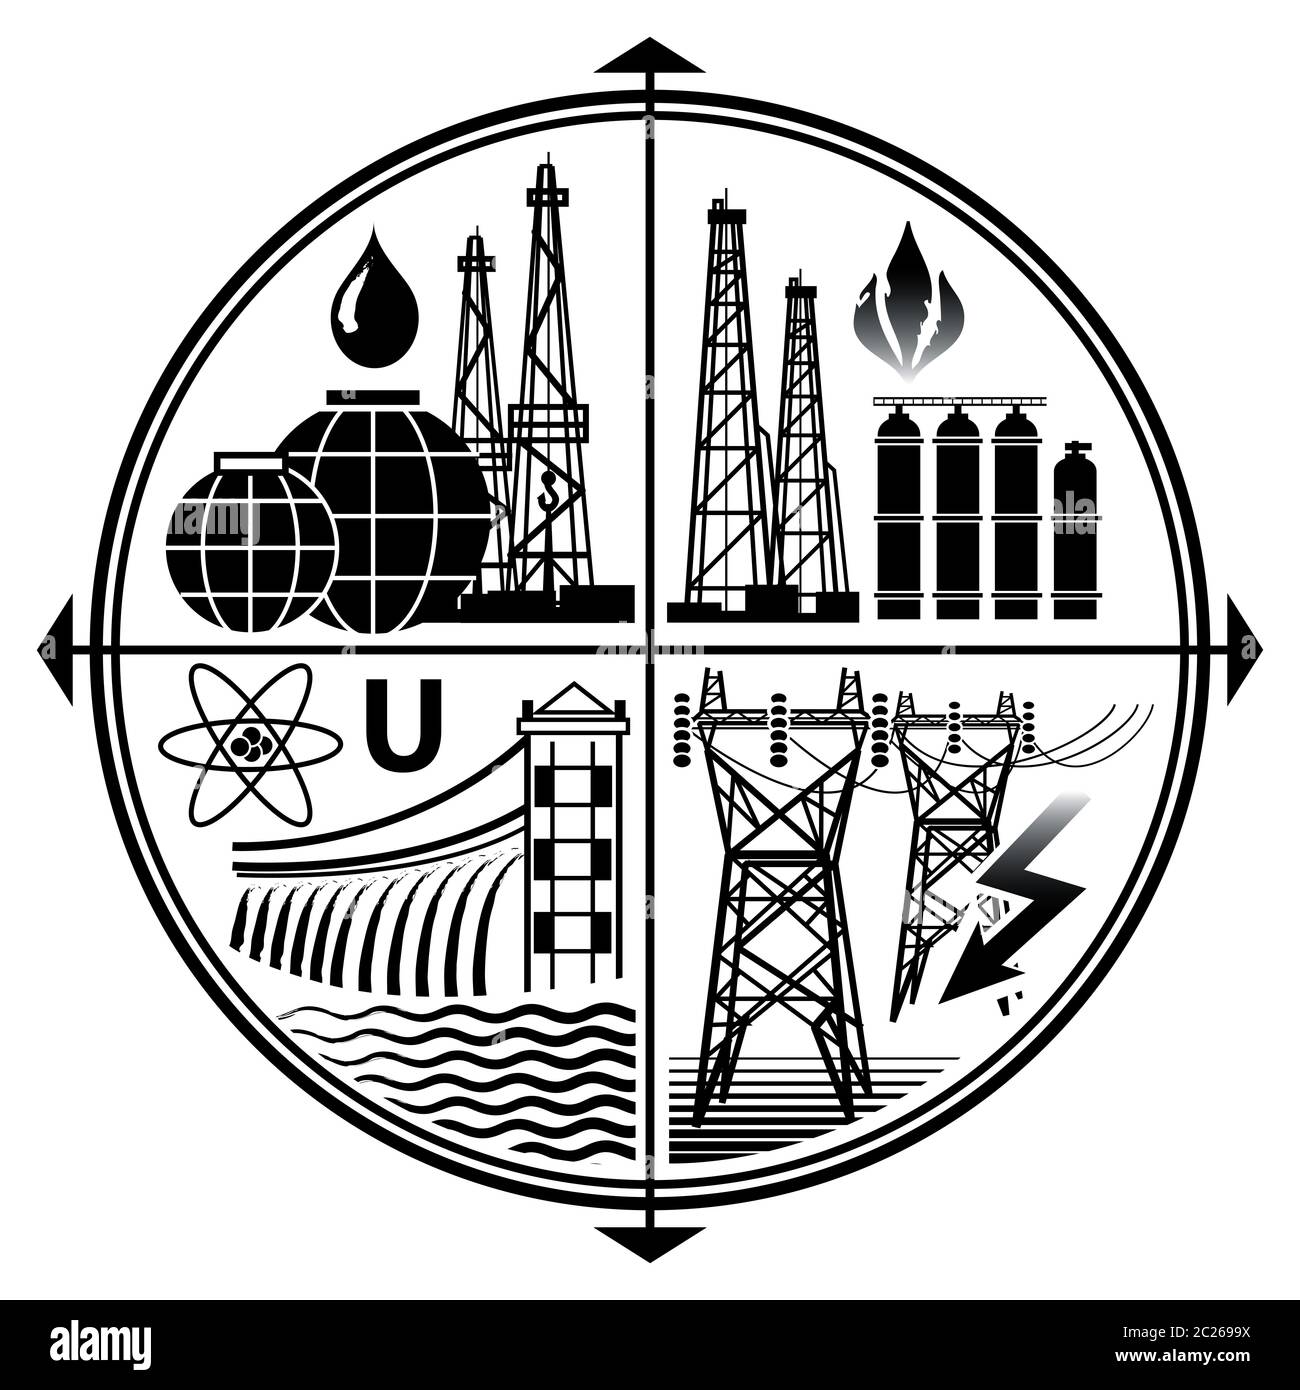 Risorse energetiche: Petrolio, gas, Elettricità, nucleare e Hydro Power. Industria emblema di energia estrazione Fossil combustibili tecnologie Foto Stock